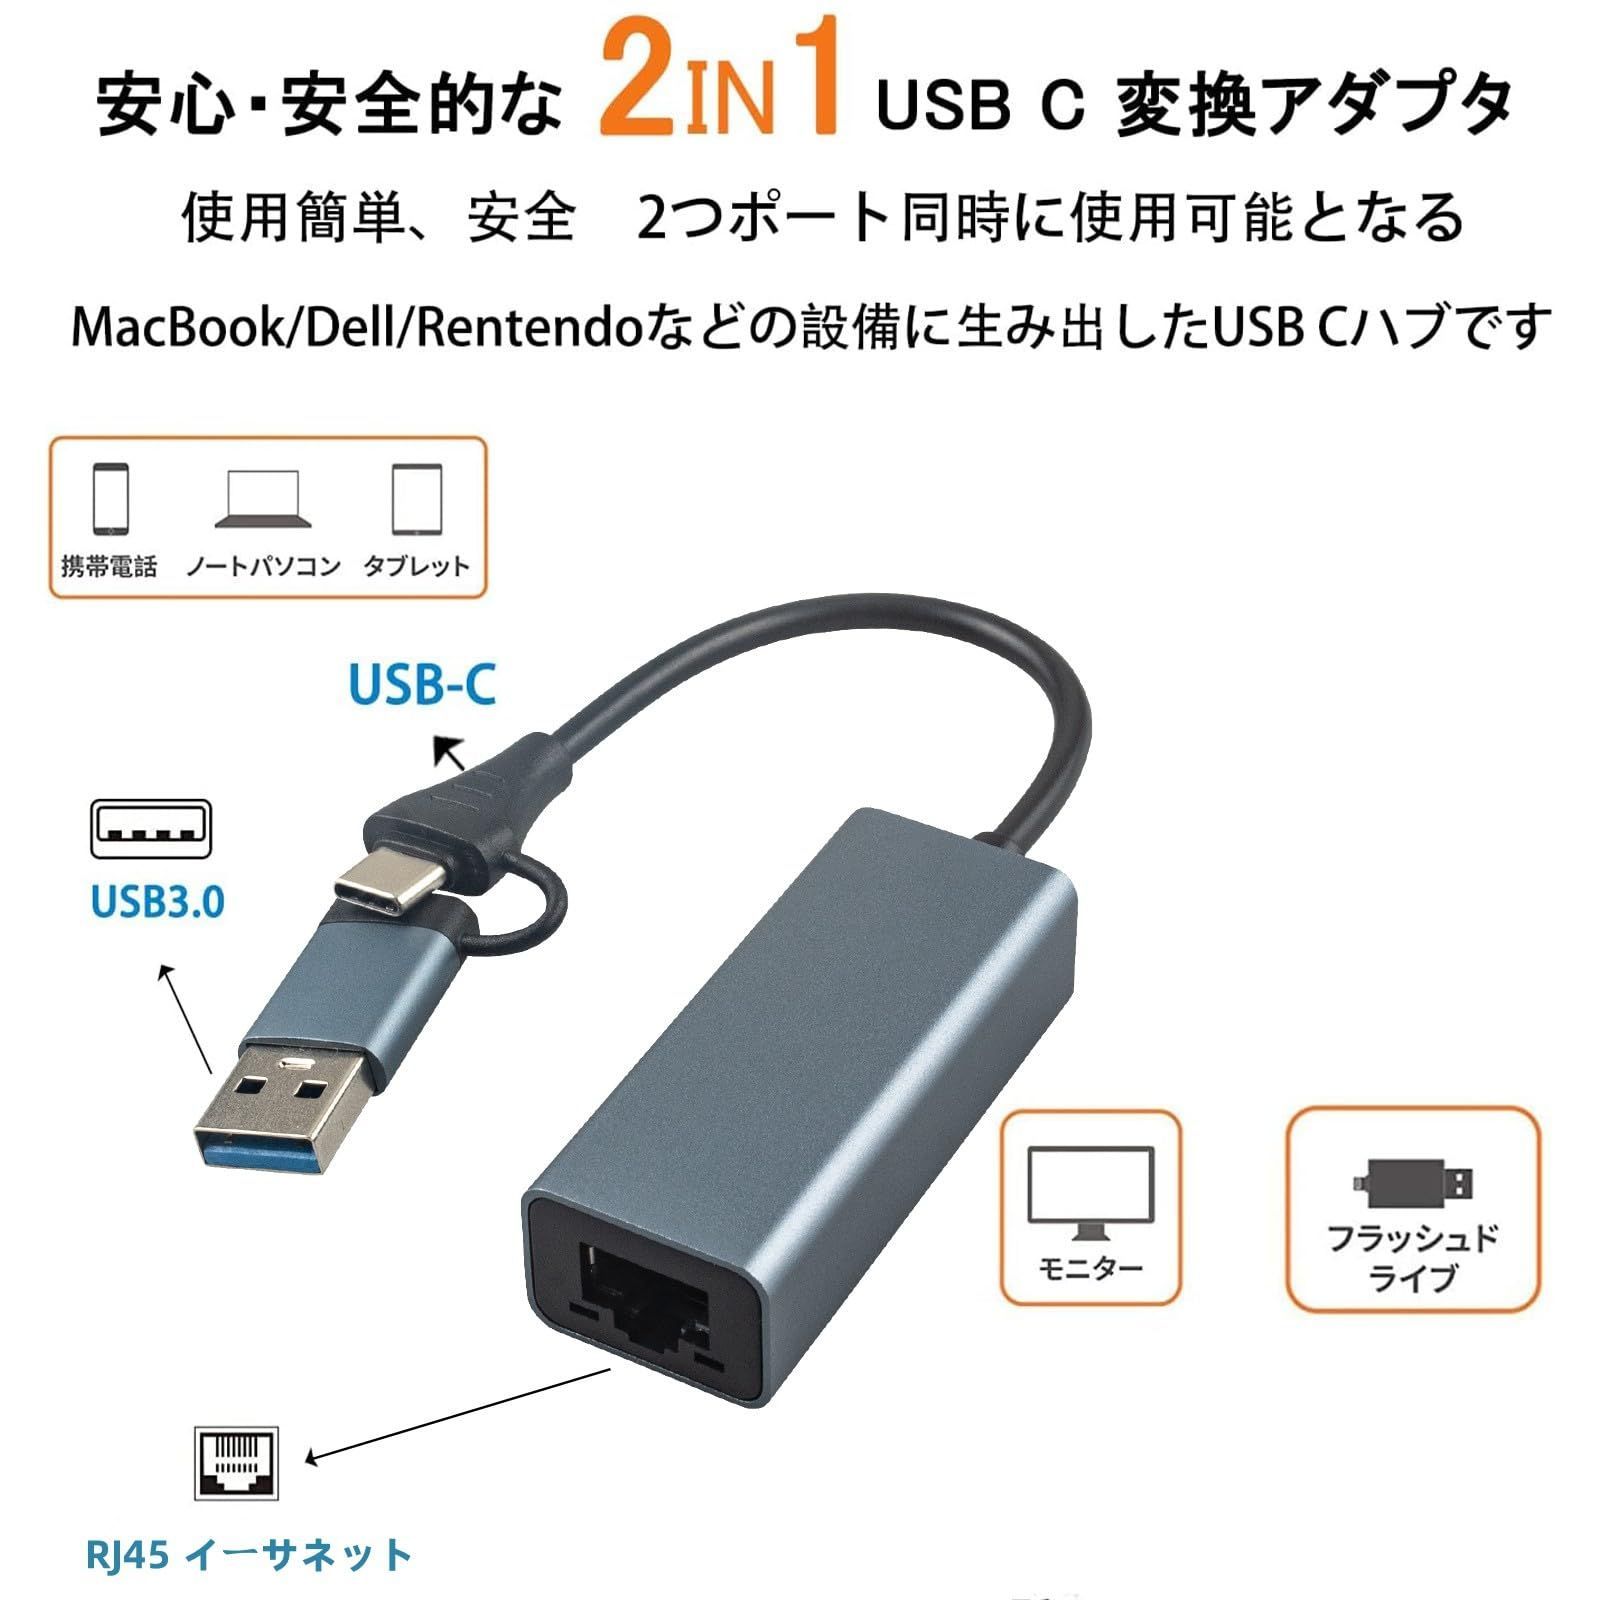 特価商品】2in1 有線LANアダプター (USB Type C+USB3.0) RJ45 to イーサネットアダプター，100Mbps高速安定転送  RJ45イーサネットアダプター，アルミケース Leehitech にドライバーフリー 。iPhone/iPa - メルカリ